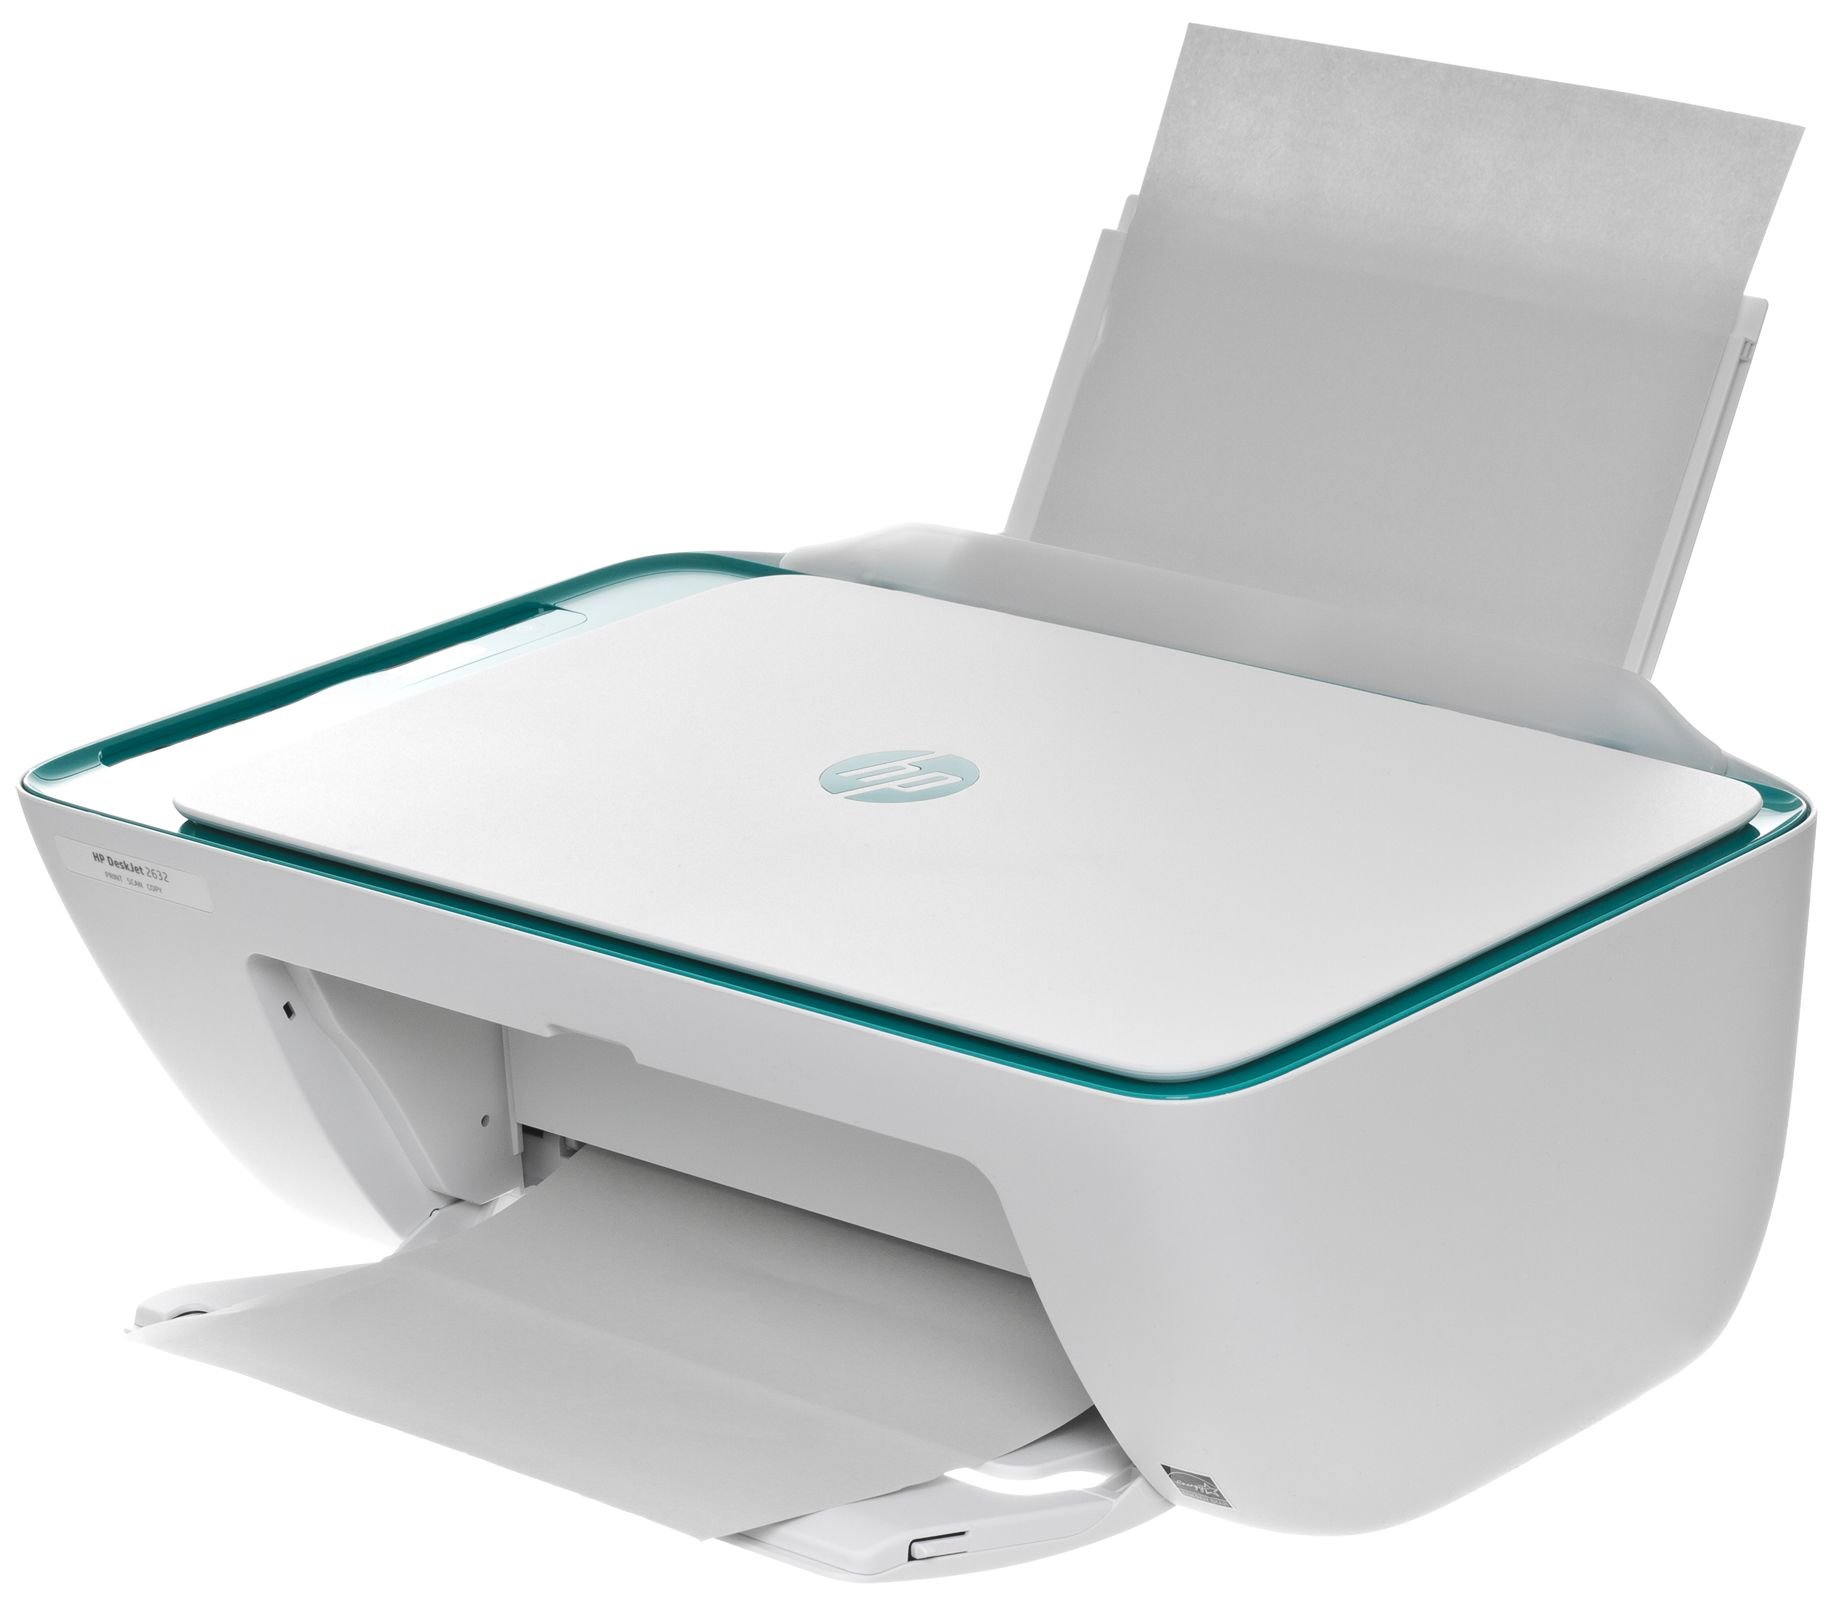 HP DeskJet 2632 (V1N05B) Urządzenie wielofunkcyjne - niskie ceny i opinie w  Media Expert